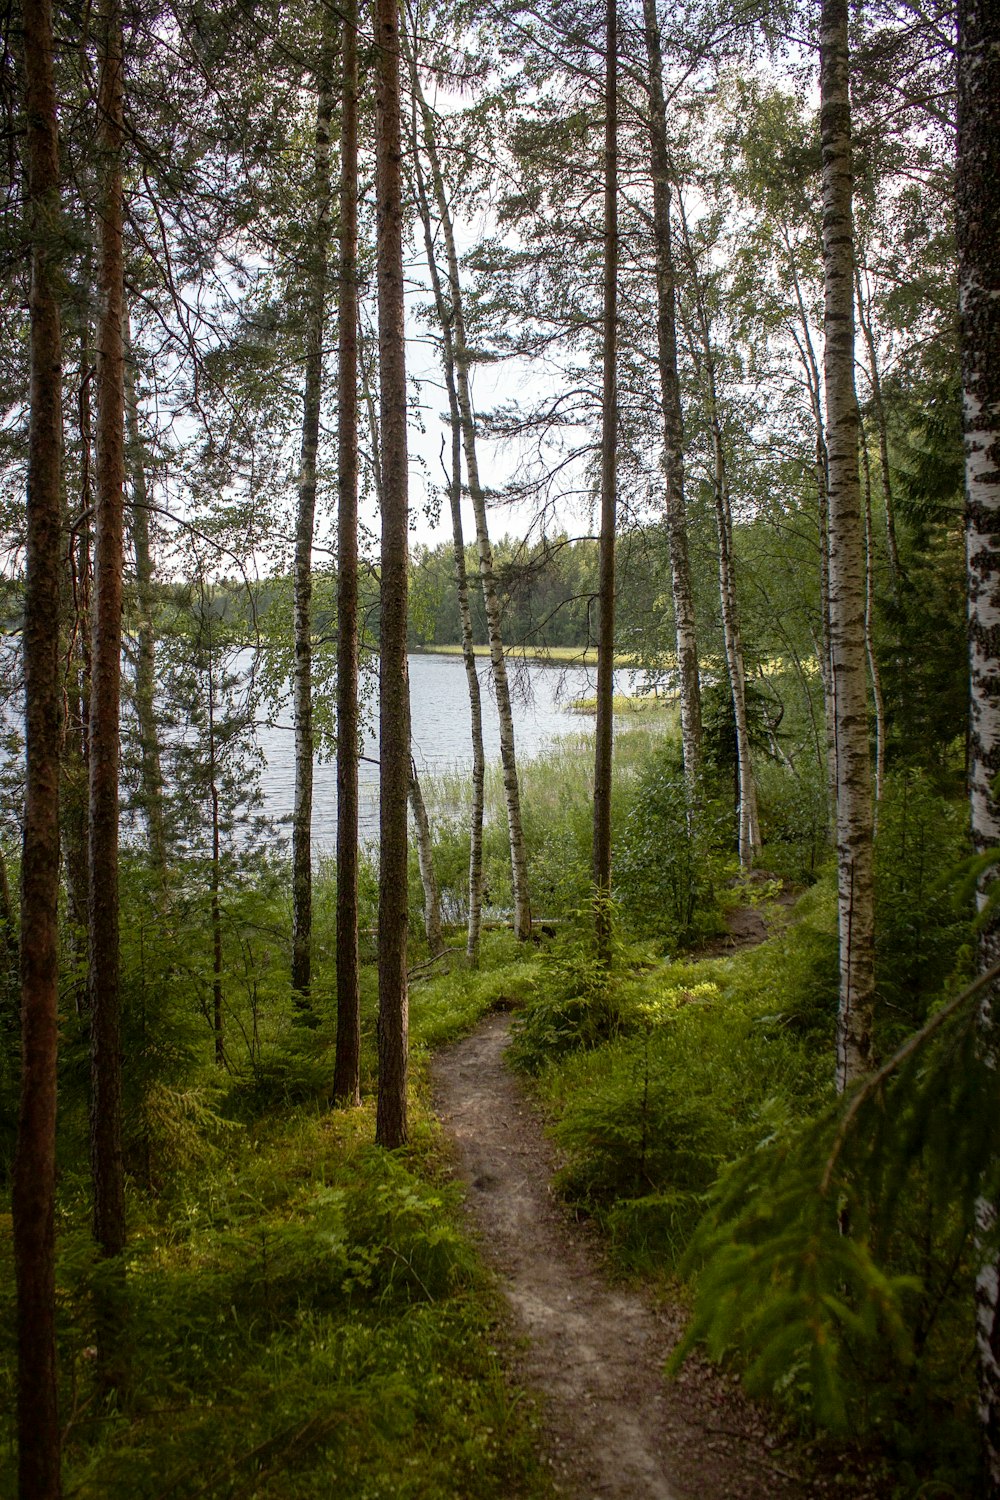 Senderos de tierra bordeados de árboles que se dirigen al lago